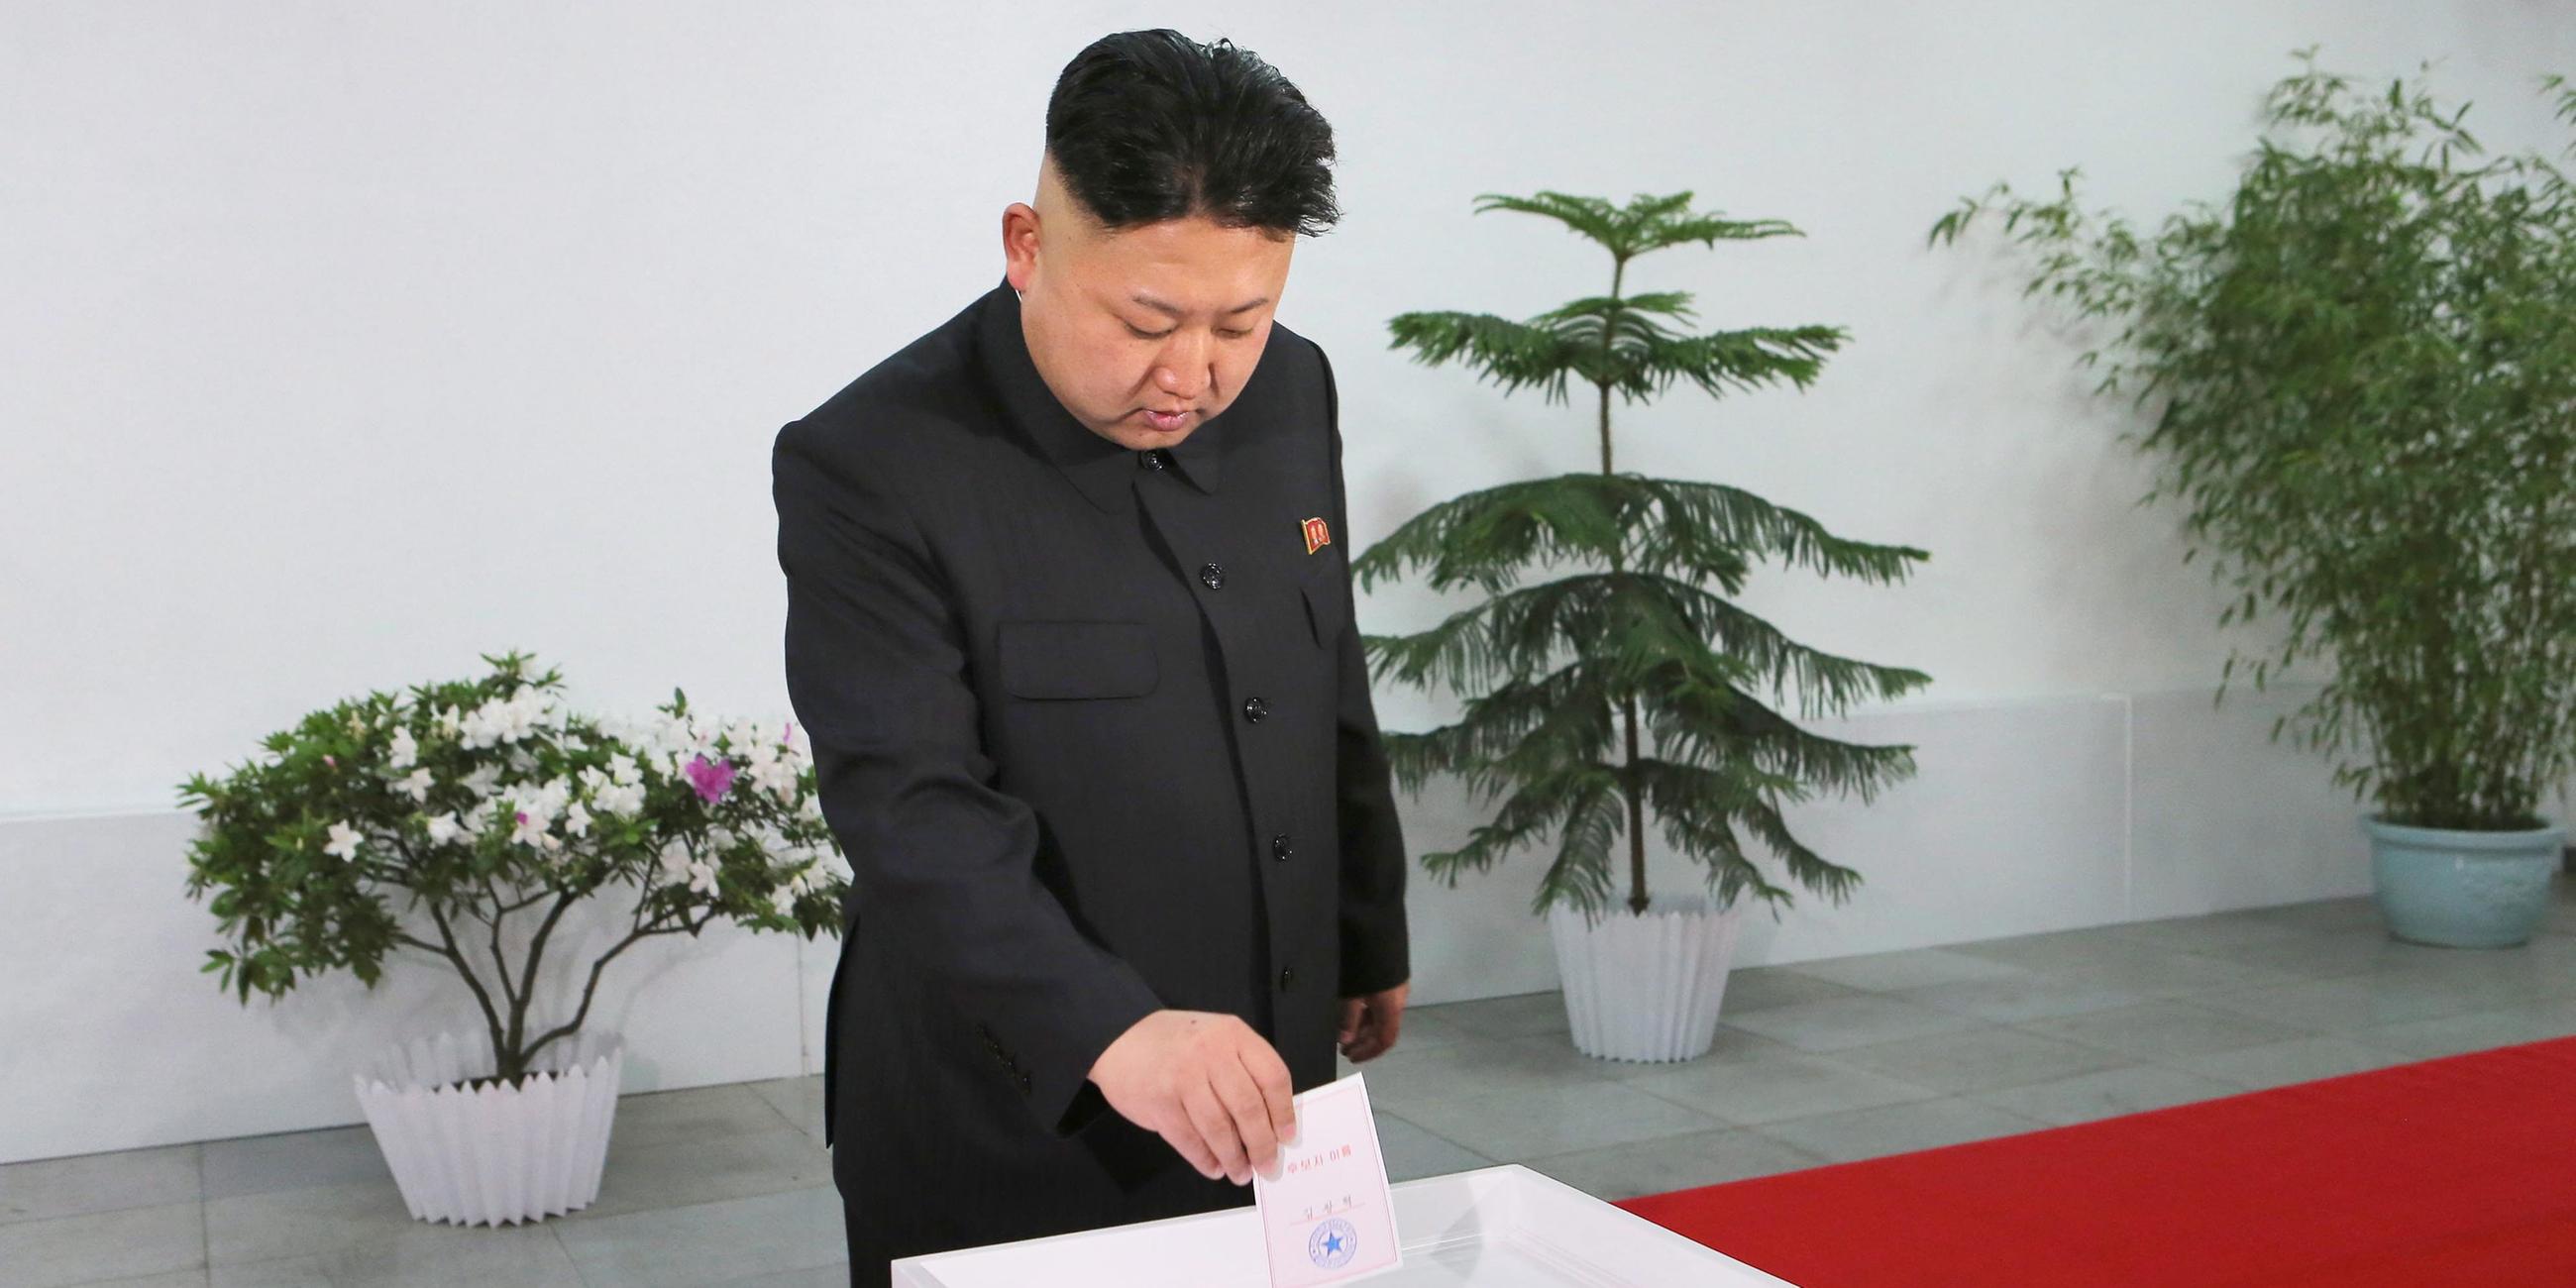 Kim Jong-un bei der Abgabe seines Wahlzettels - 2014